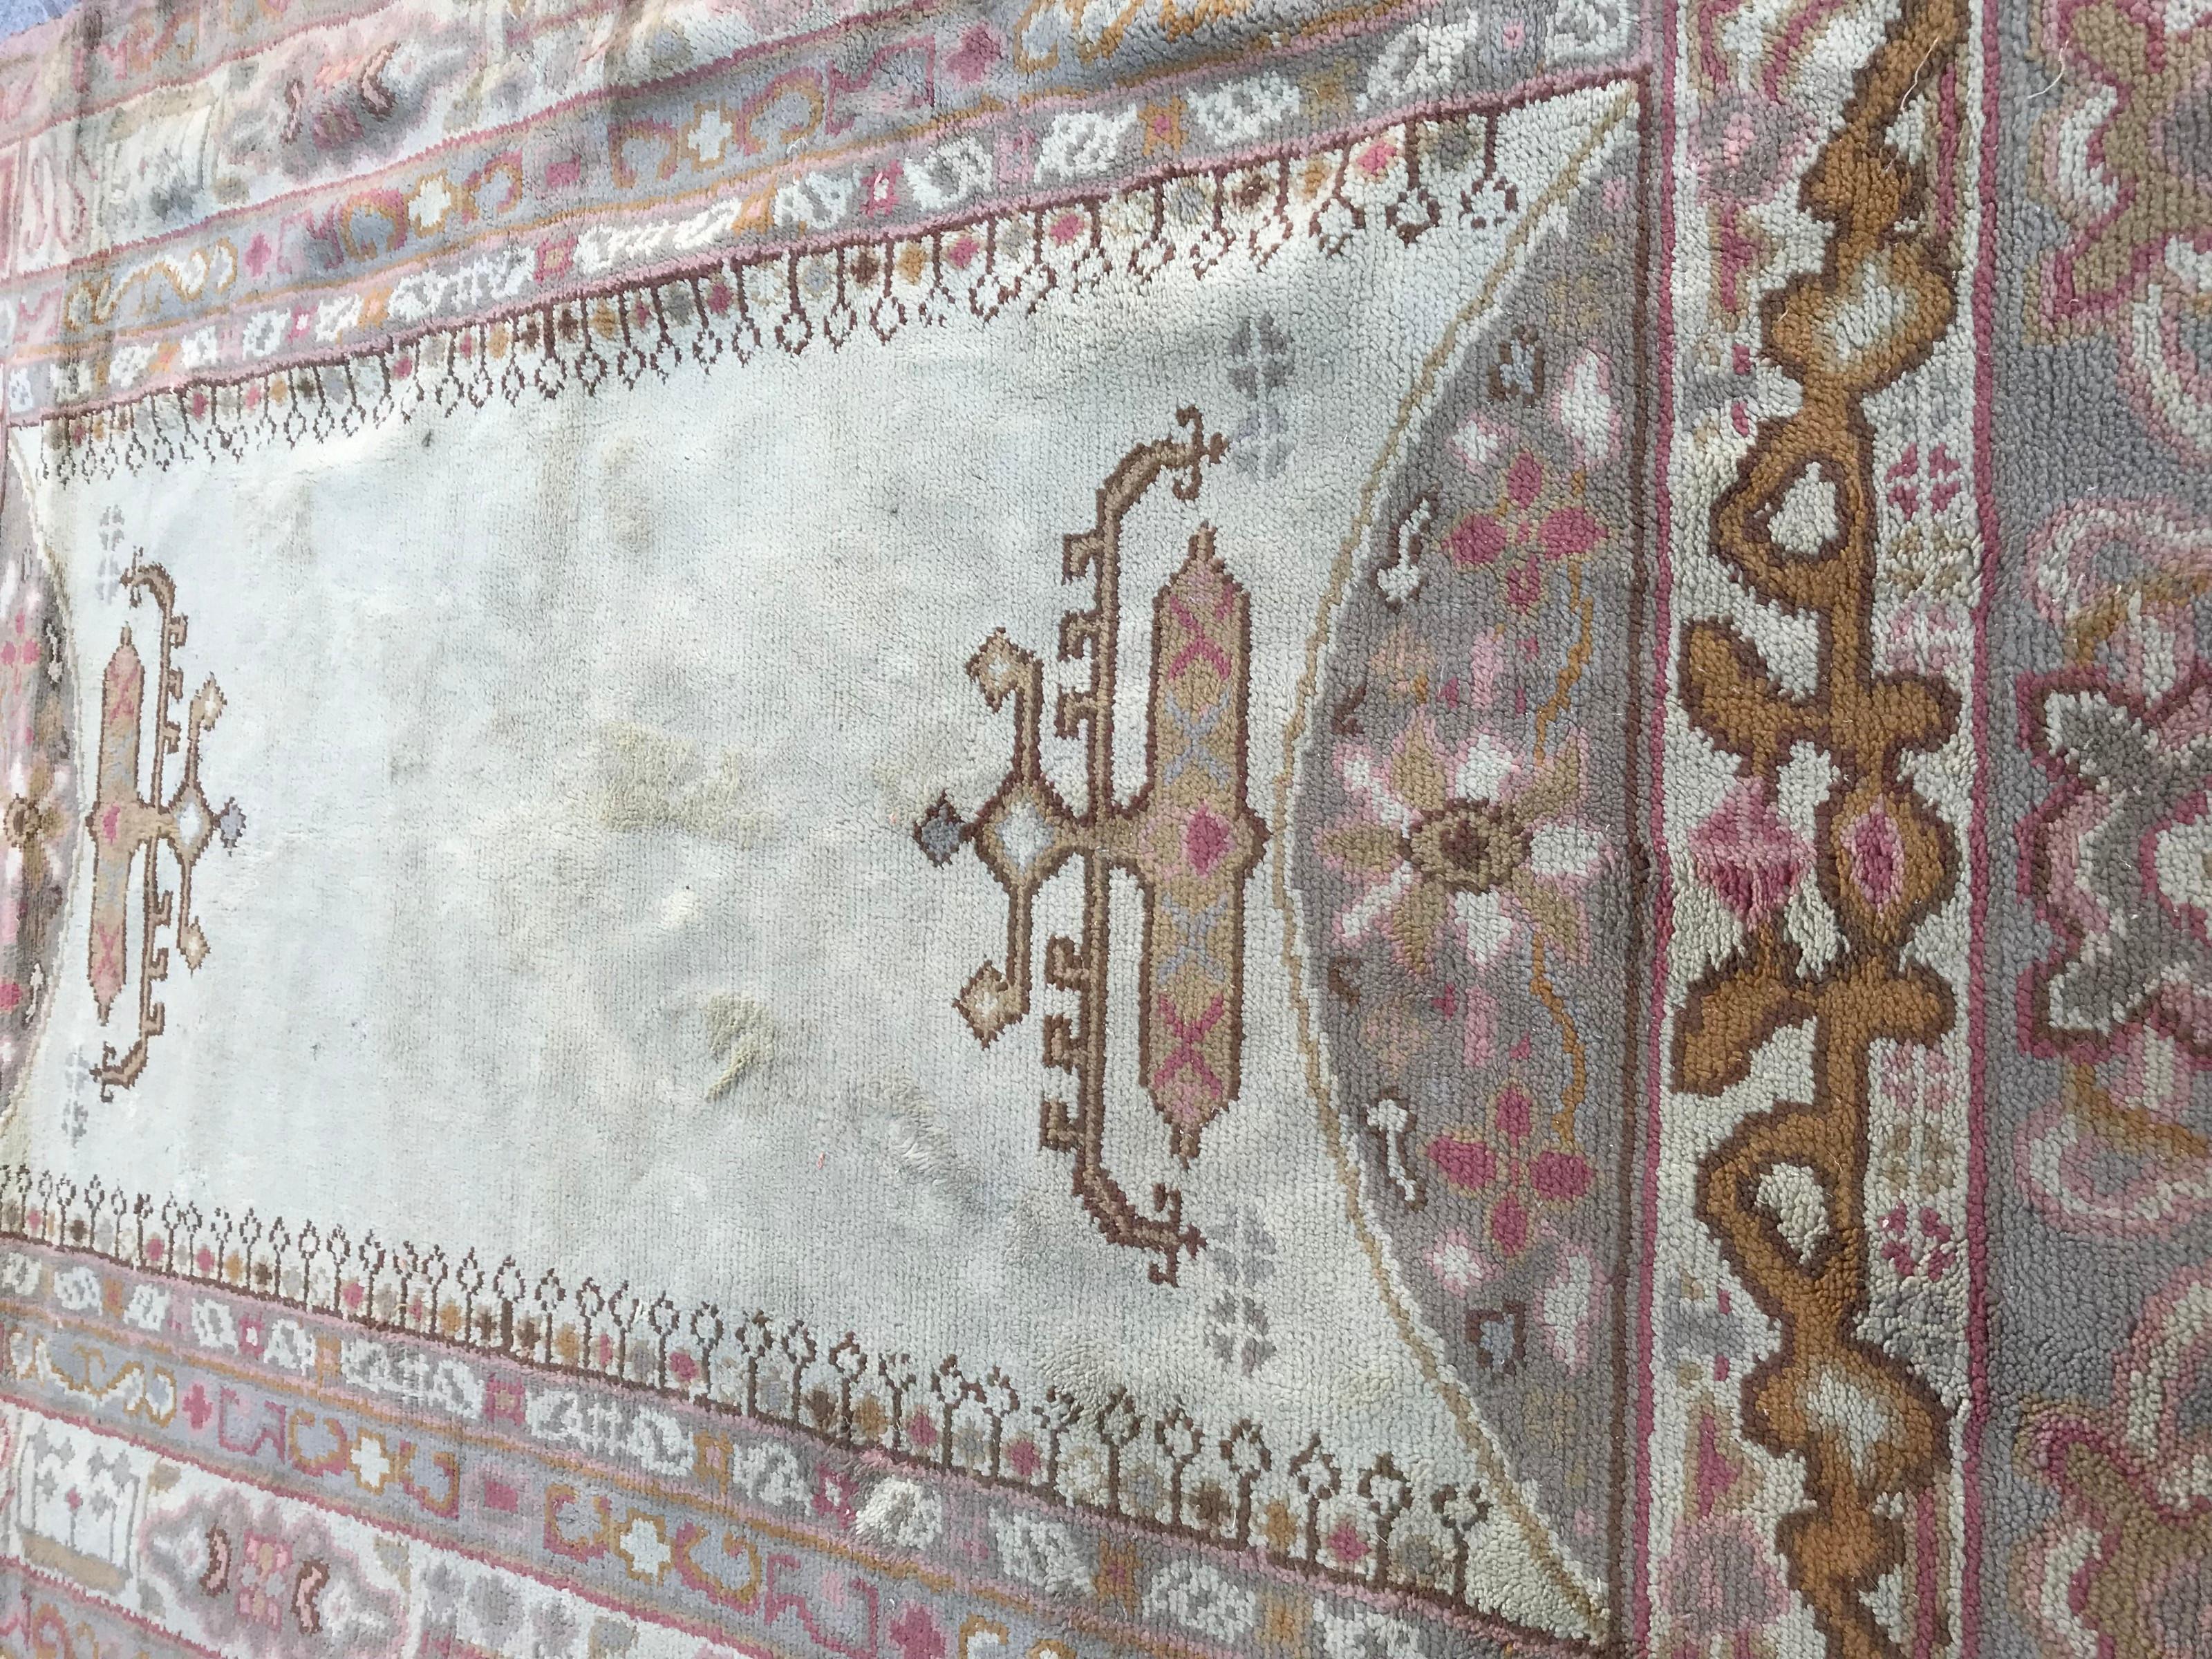 Spanischer handgeknüpfter Teppich aus dem frühen 20. Jahrhundert, mit einem Muster aus antiken türkischen Ushak-Teppichen, sowie hellen Mustern und Farben, Wollsamt auf Baumwoll- und Jutegrund. Größe: 6ft 3.2inch x 9ft 4.21inch.